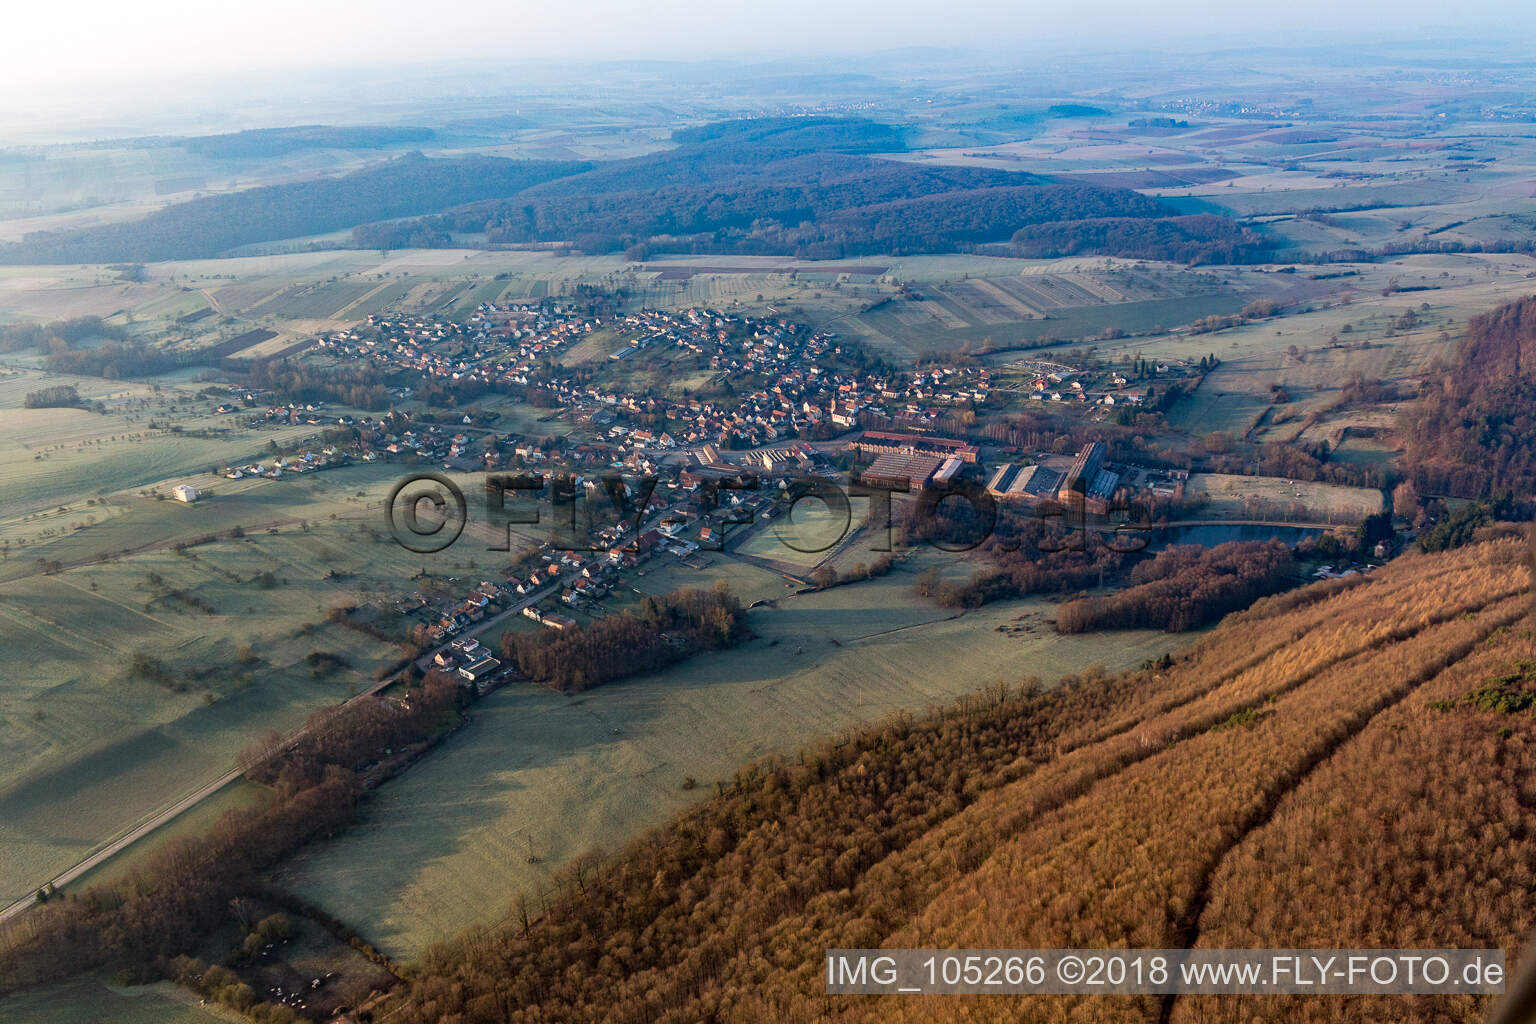 Zinswiller im Bundesland Bas-Rhin, Frankreich von oben gesehen